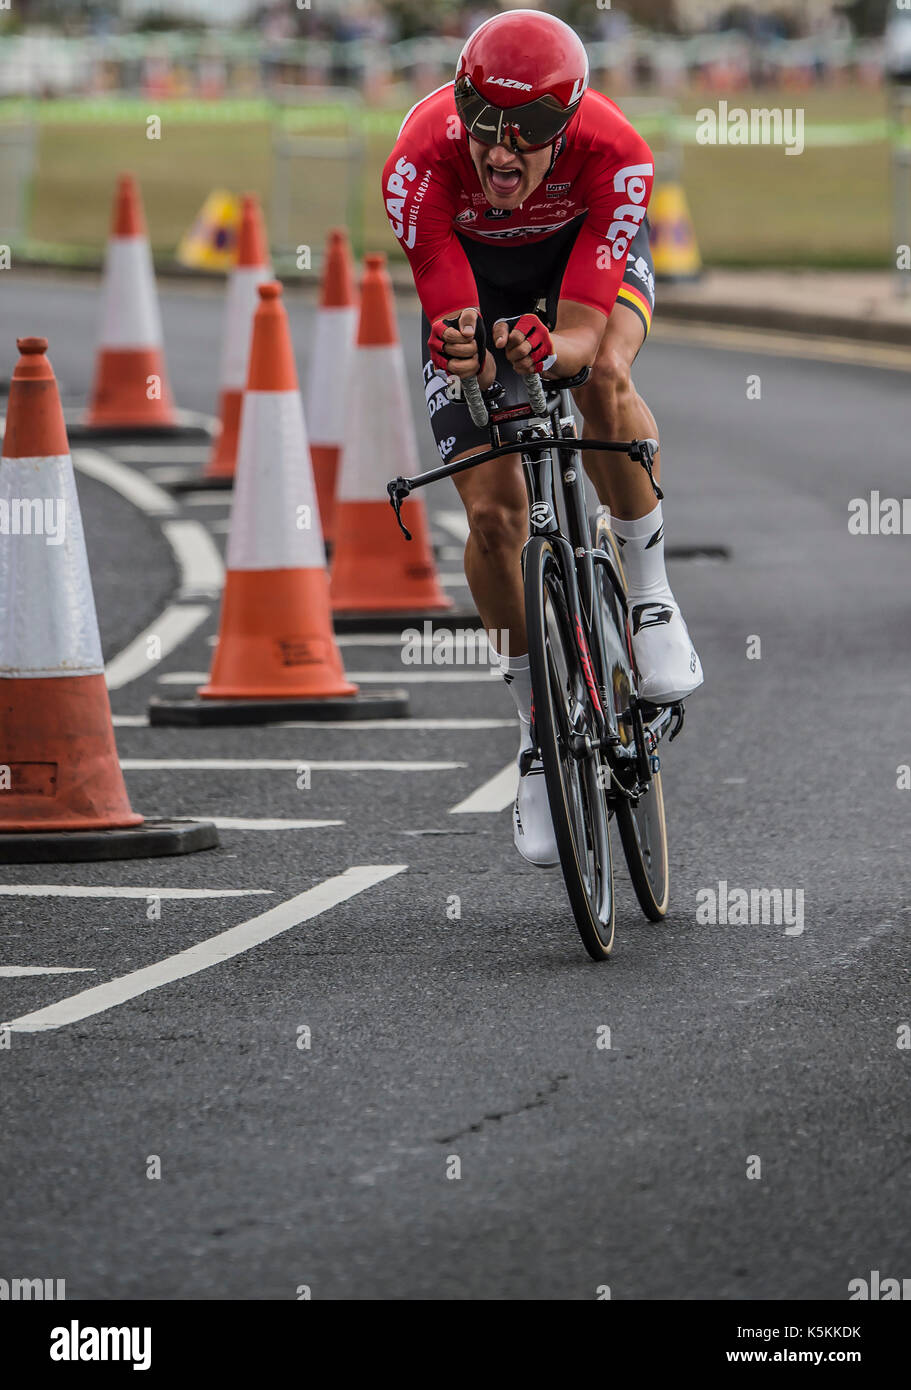 Nikolas MAES, Lotto Soudal,Tour of Britain cycle race stage 5 timetrial at Clacton on sea, UK. Stock Photo